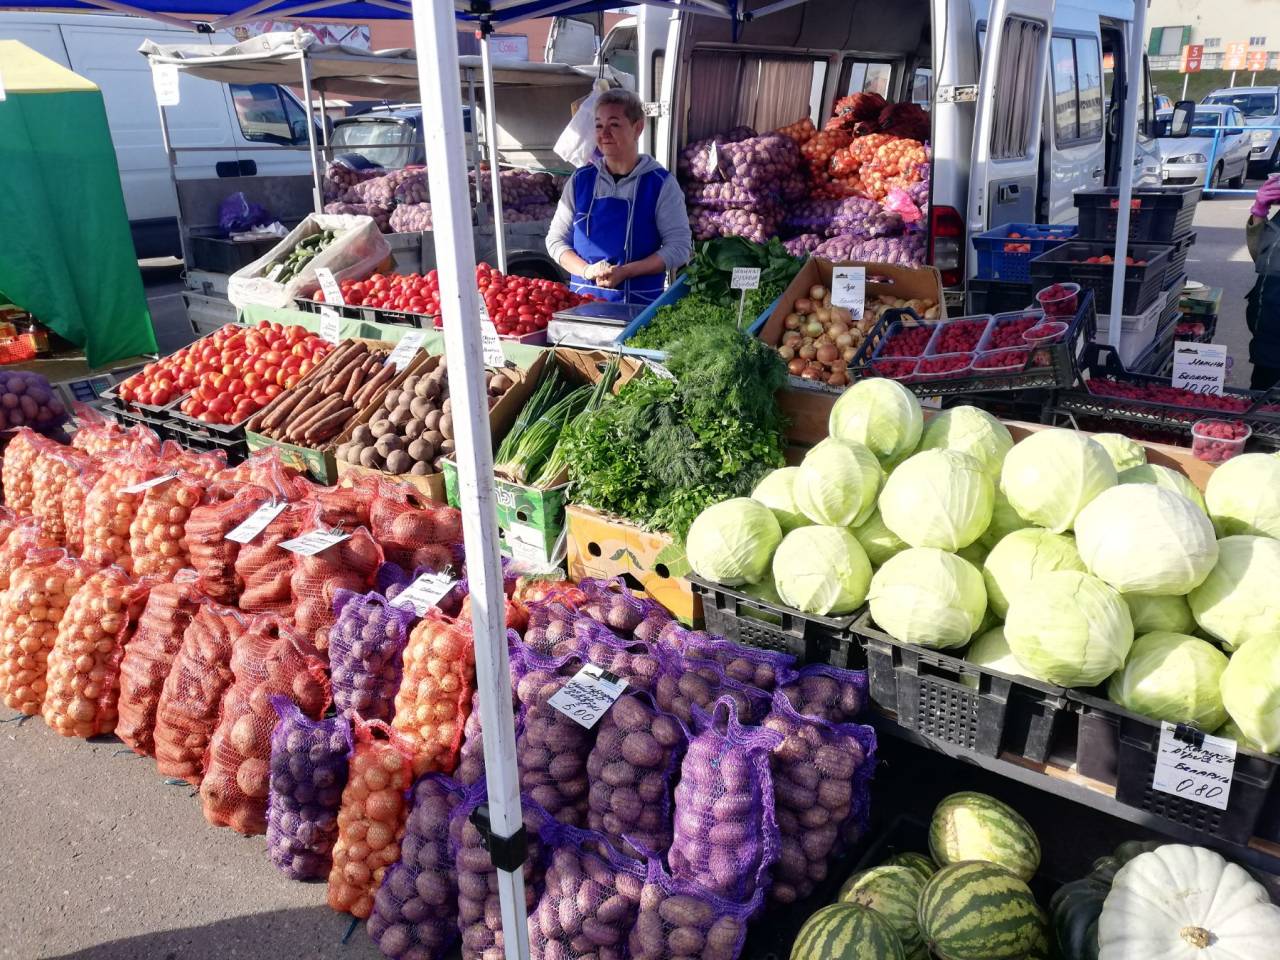 На выходных у Oldcity в Гродно пройдет сельхозярмарка: что там можно будет купить?